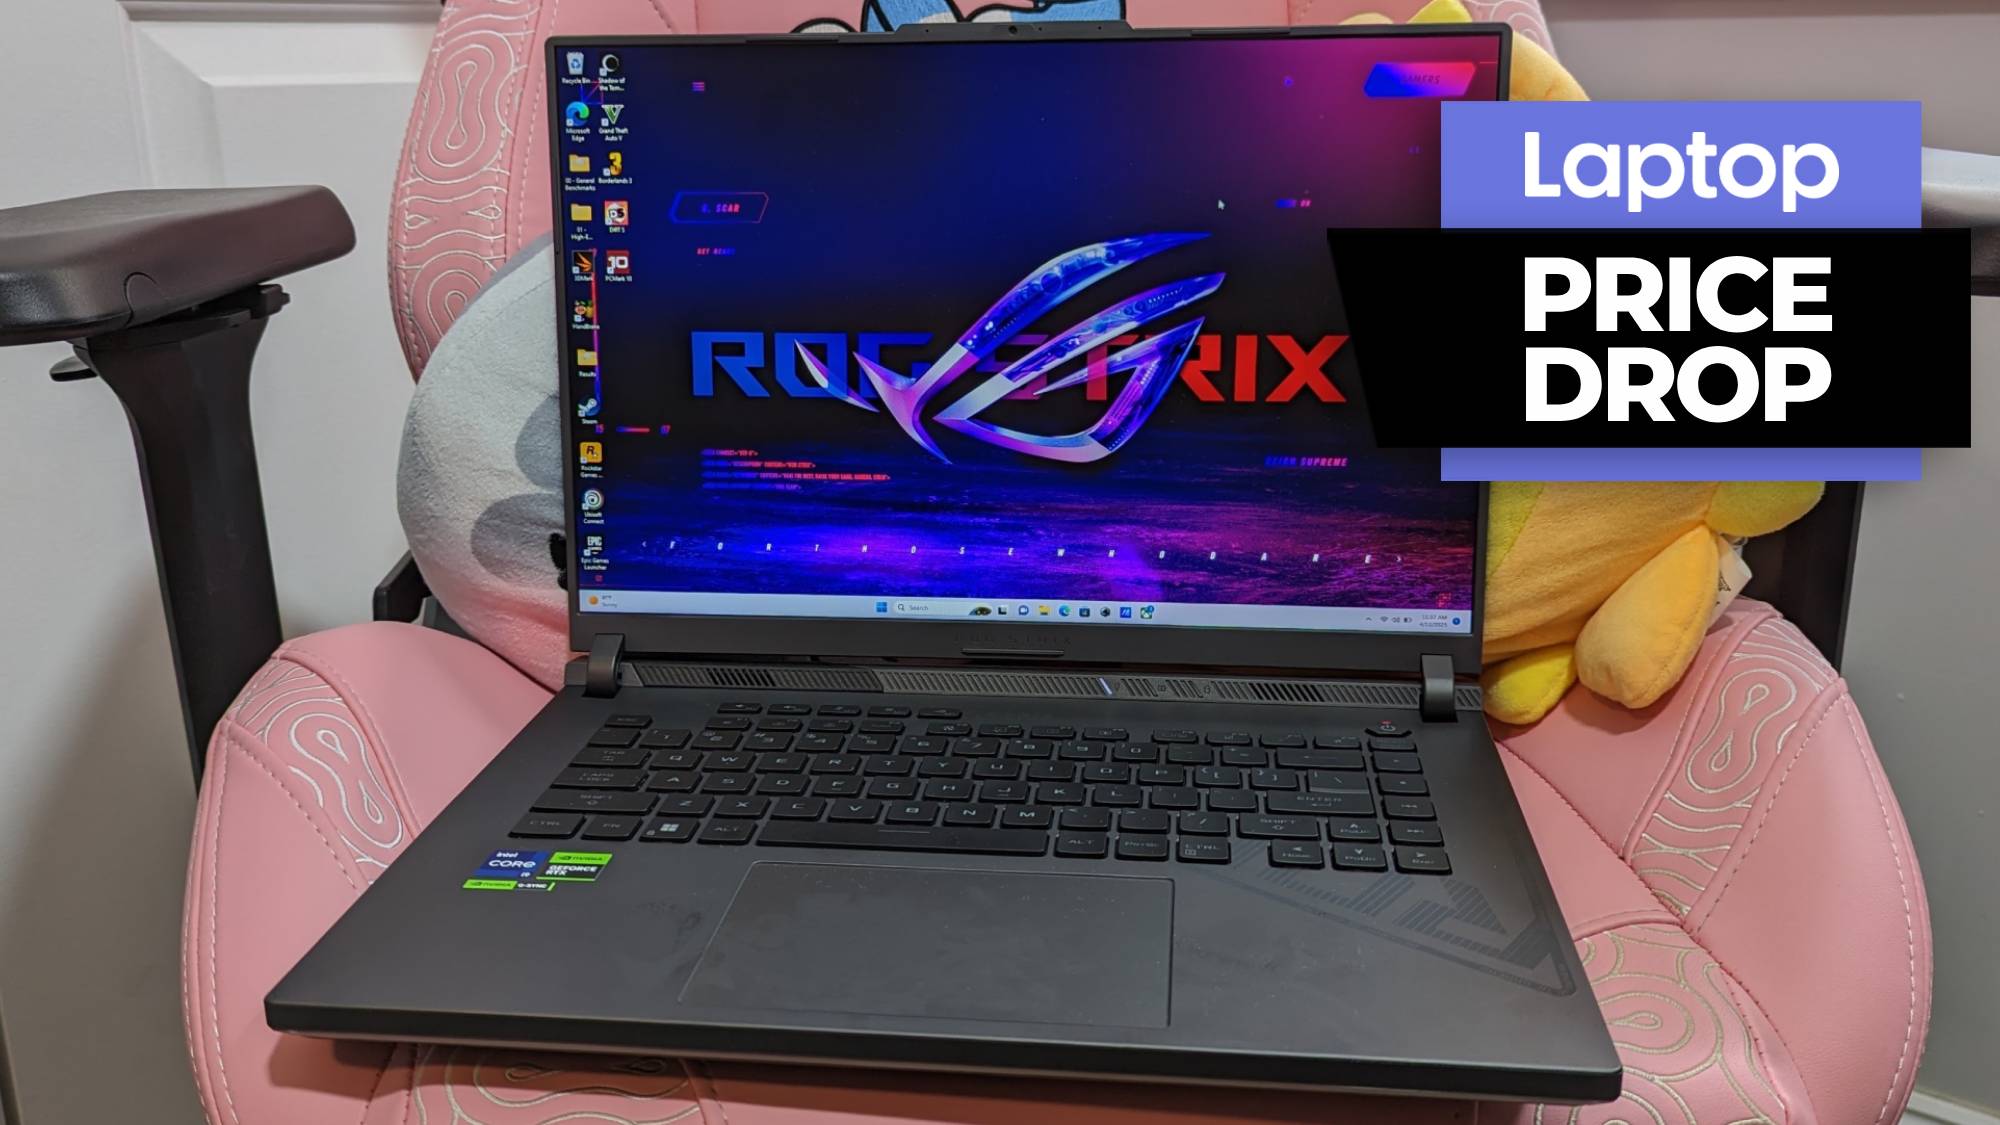 ASUS ROG Strix G16 Gaming Laptop, 16 165Hz Display, Intel Core i7